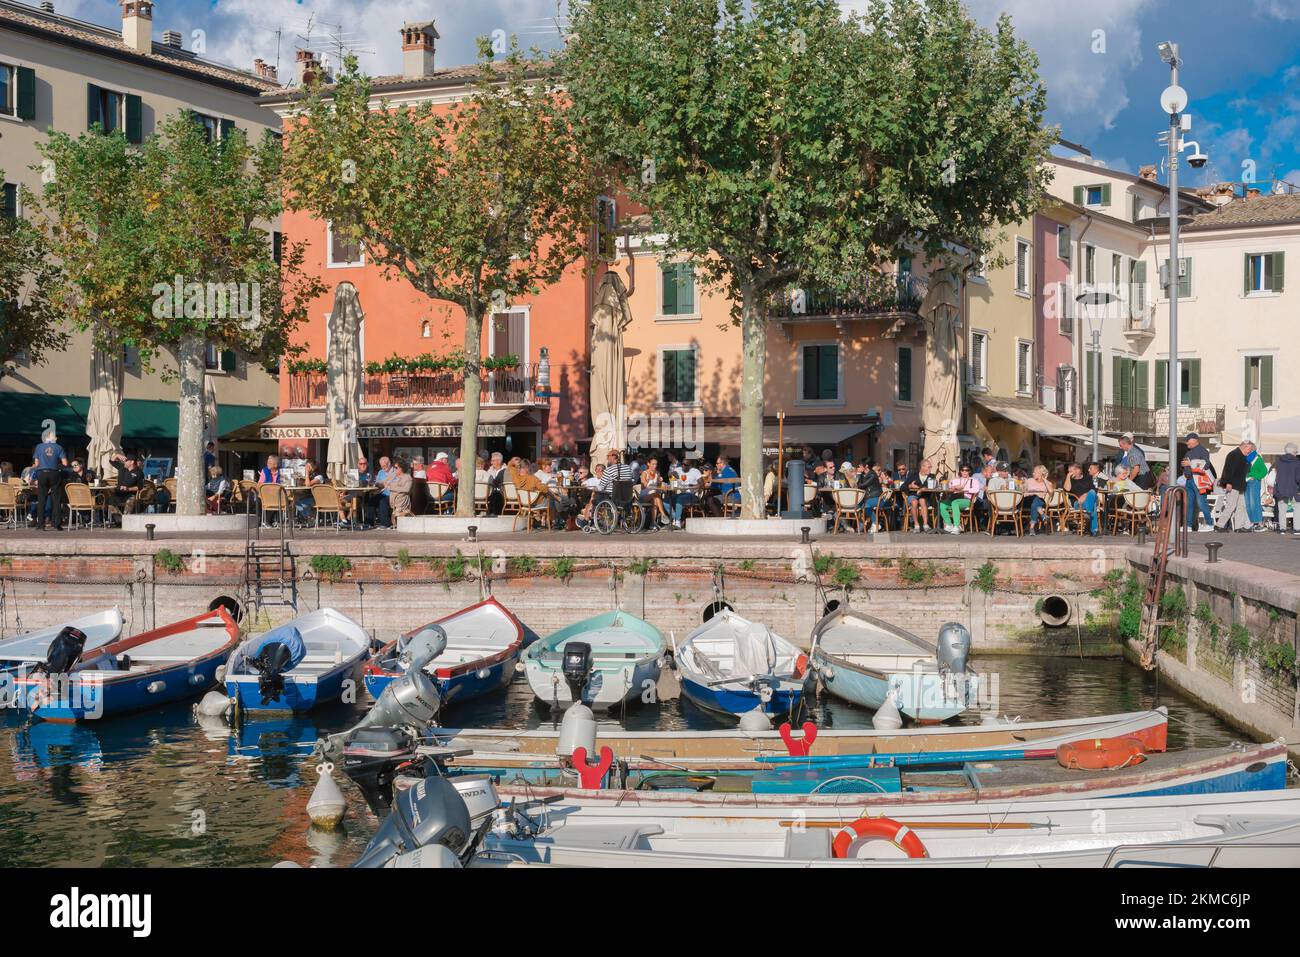 Garda Lago de Garda, vista en verano de las personas sentadas fuera de los cafés y bares en la Piazza Catullo en la zona costera de la ciudad vieja de Garda, Italia Foto de stock